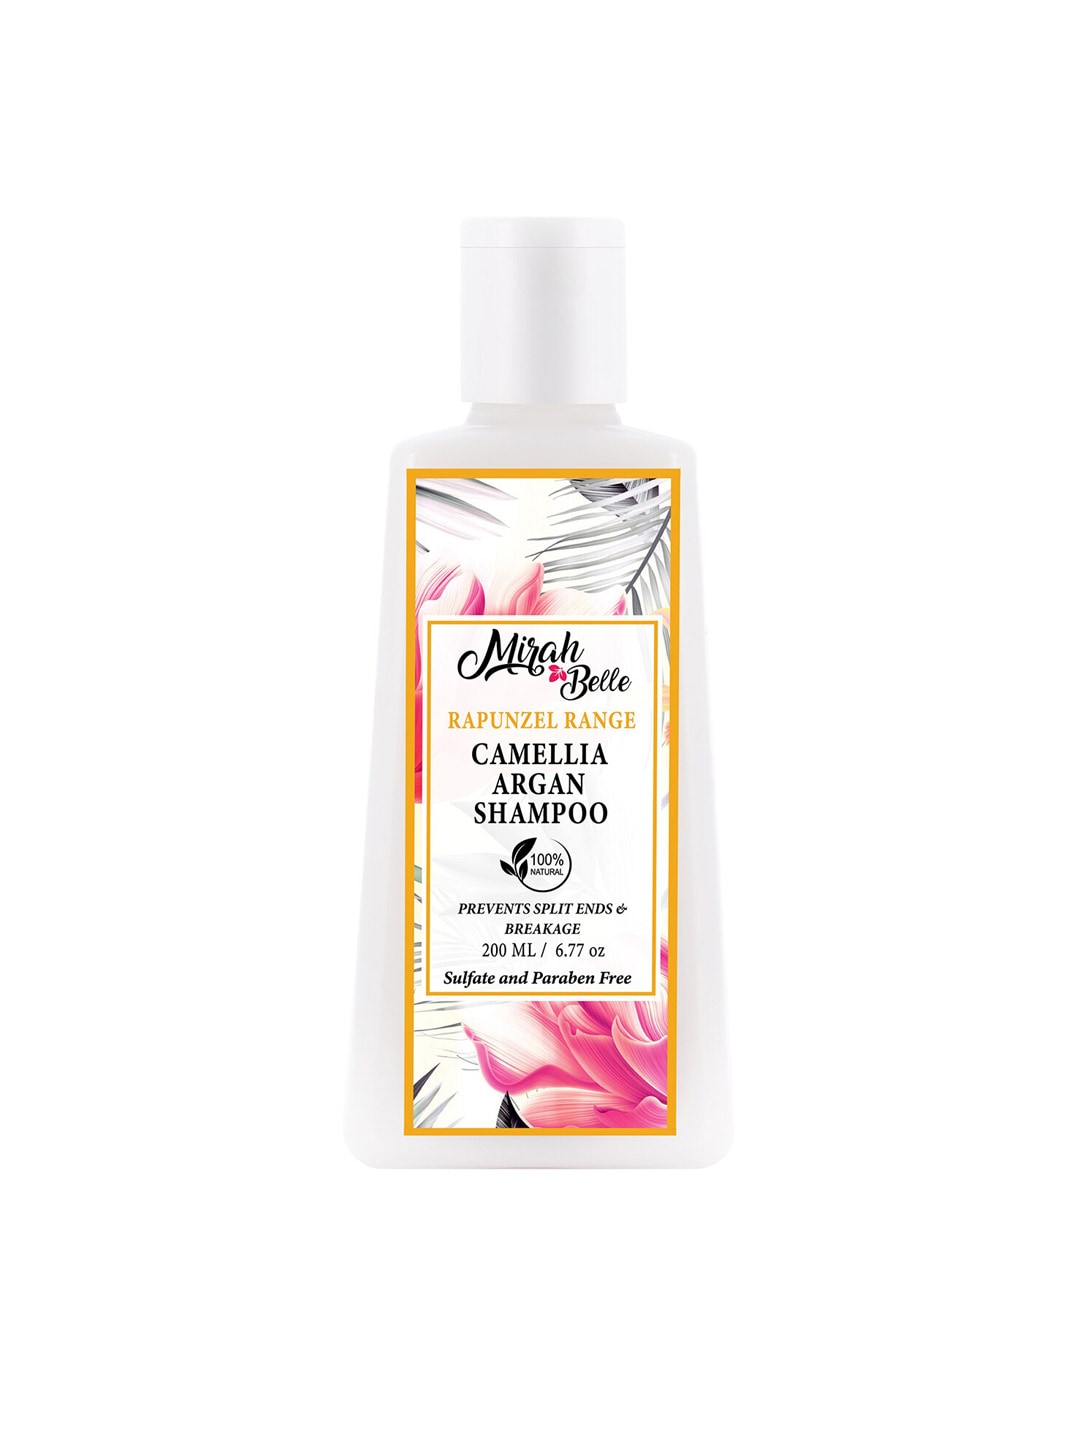 Mirah Belle Unisex Camellia Argan Shampoo 200 ml Price in India